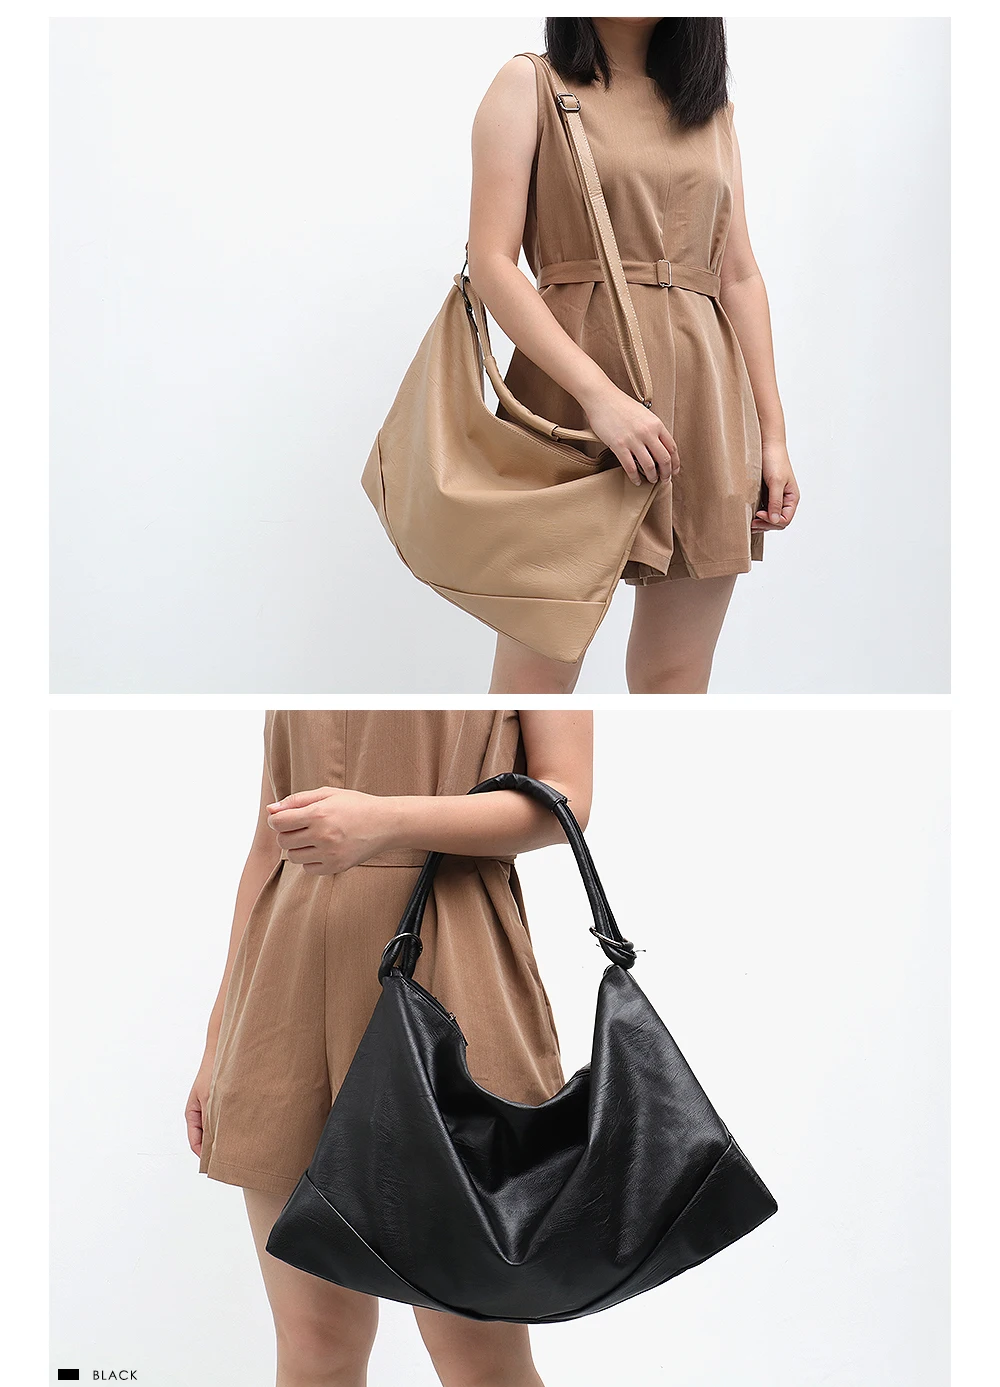 CEZIRA, большие сумки Хобо для женщин, веганская кожаная сумка на плечо, мягкая высококачественная искусственная кожа, модная Повседневная стильная женская сумочка, сумка через плечо